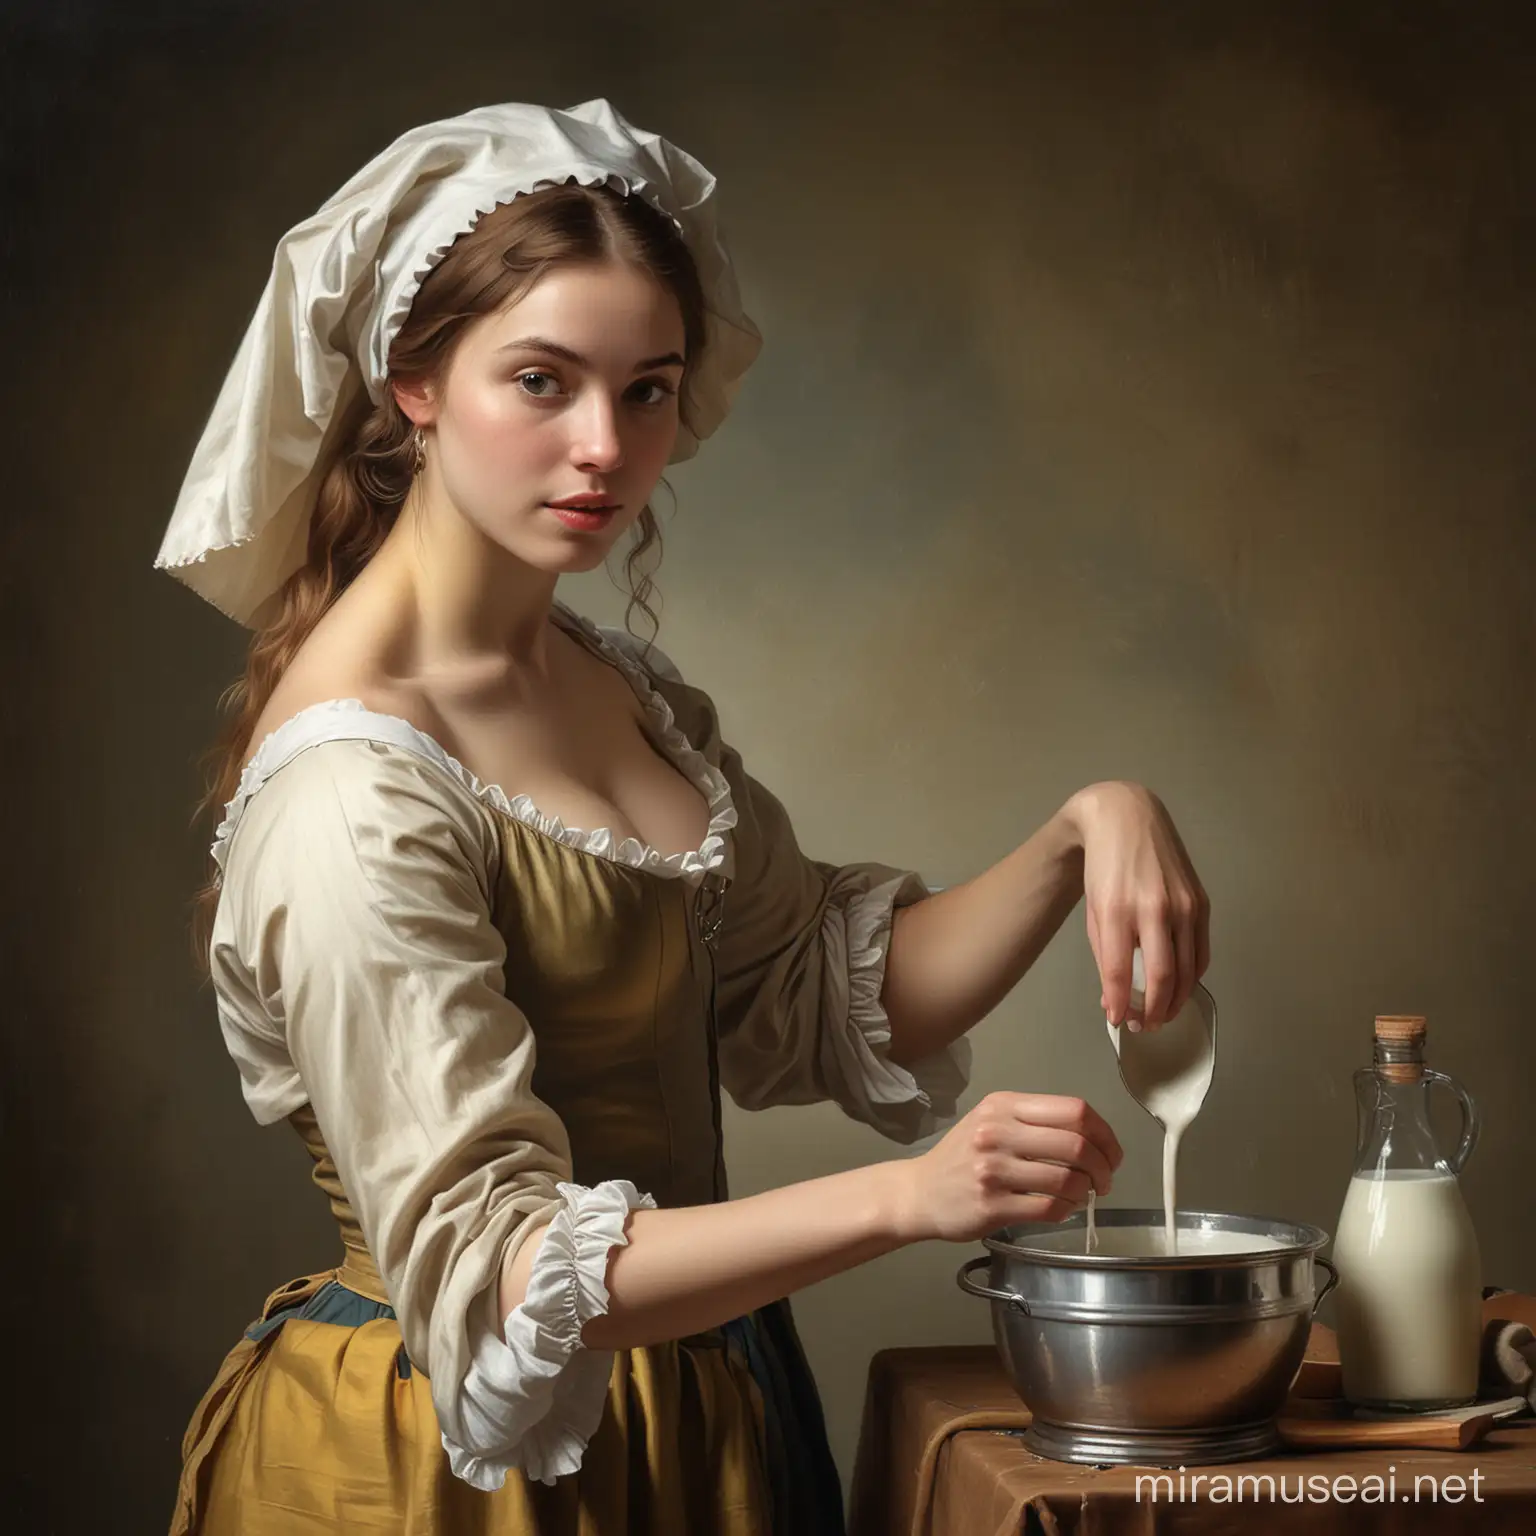 Stunning Nude Milkmaid Portrait VermeerInspired Beauty in Vigee Le Brun Style